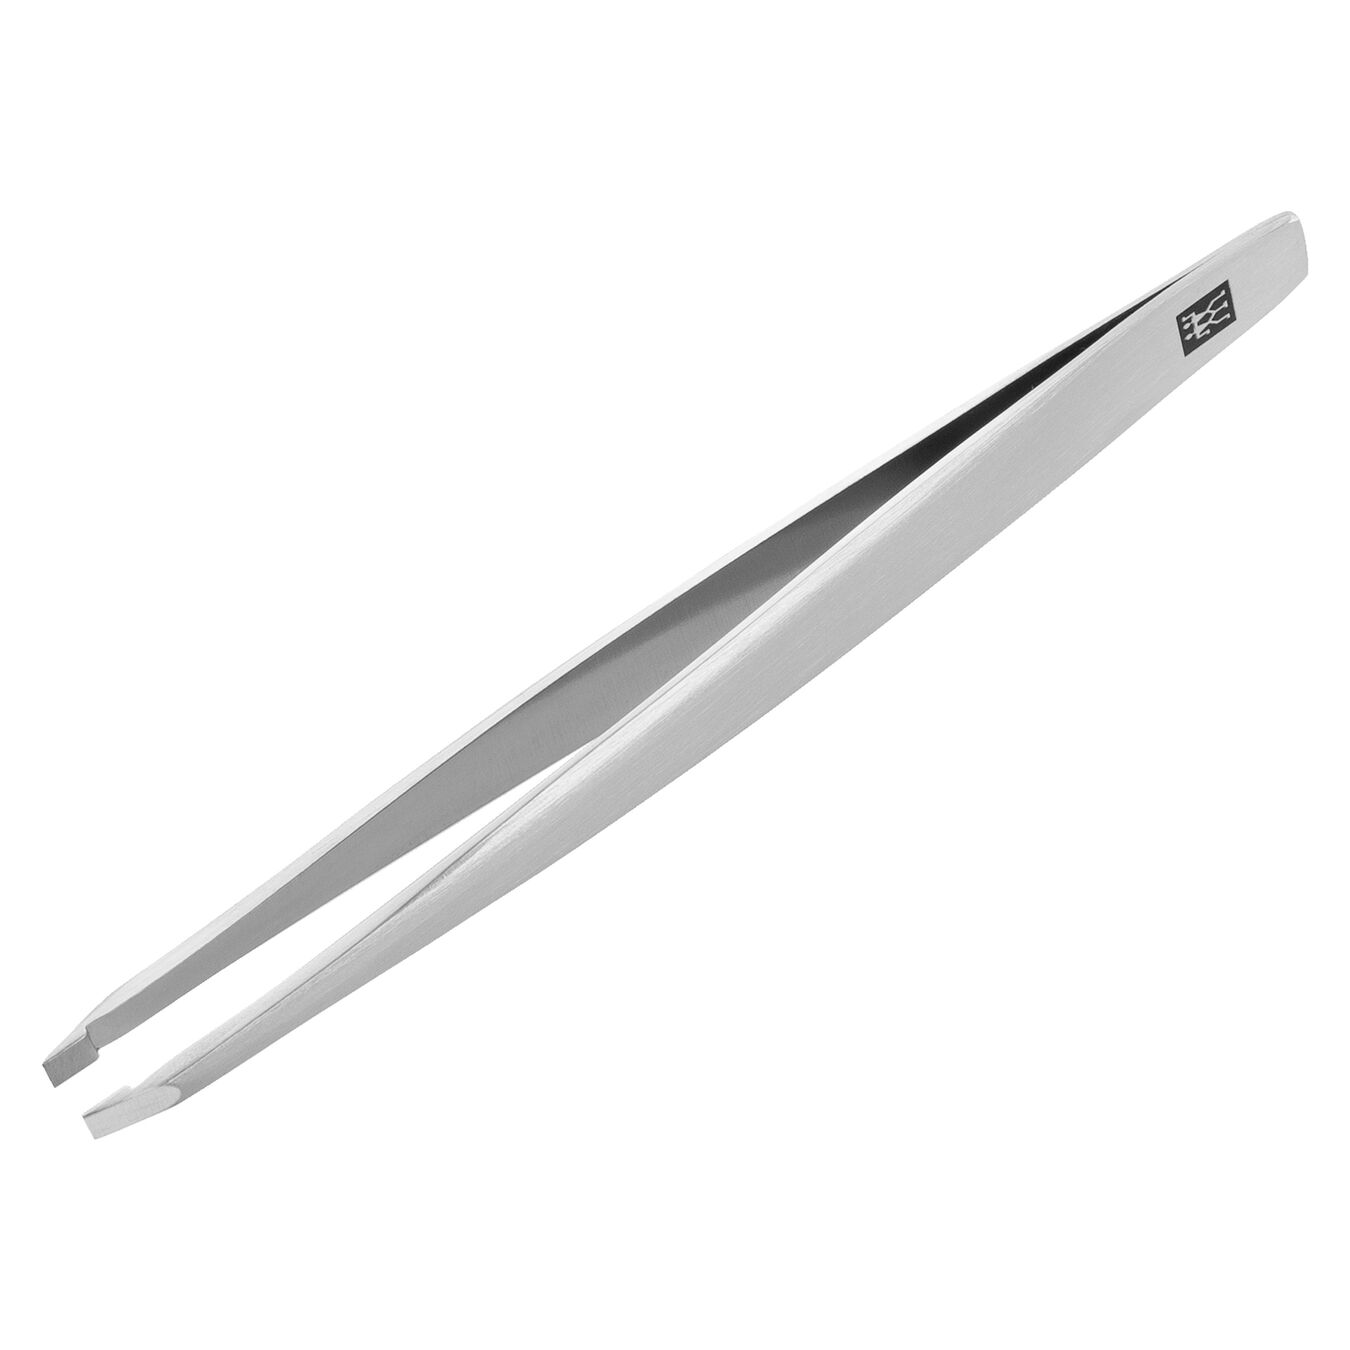 3.5-inch Tweezers, slanted ,,large 2